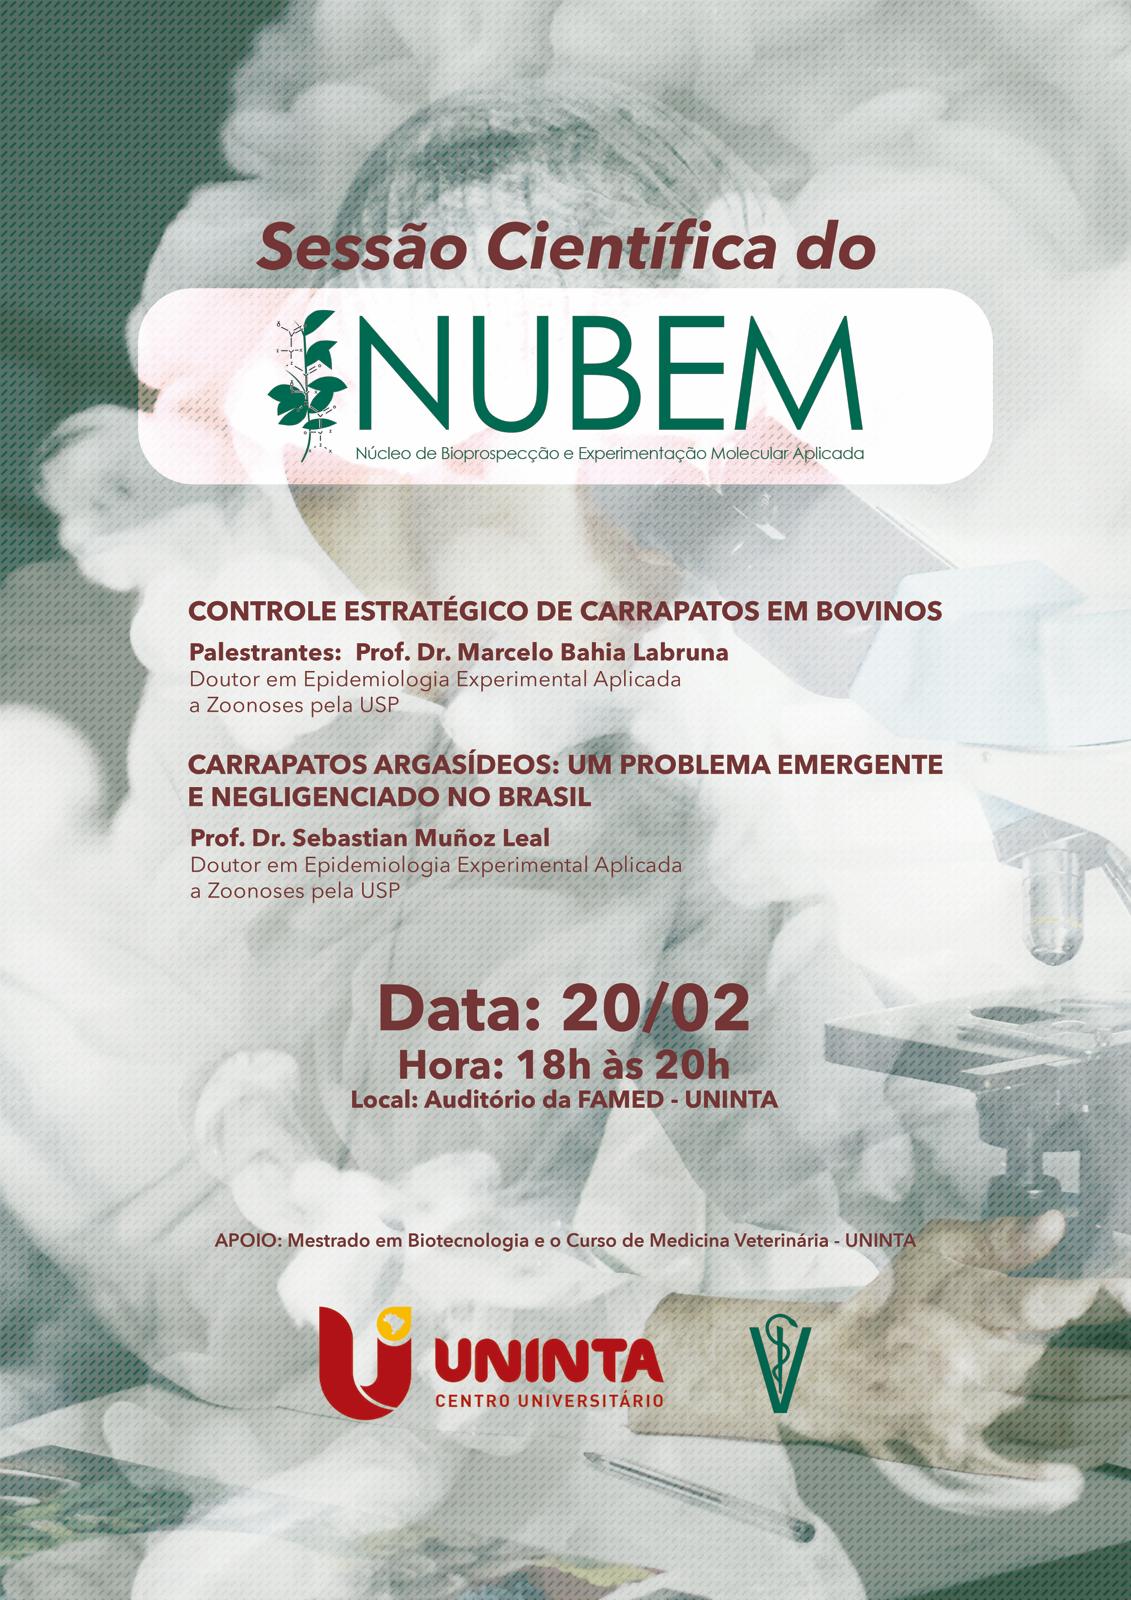 Sessão Científica do NUBEM